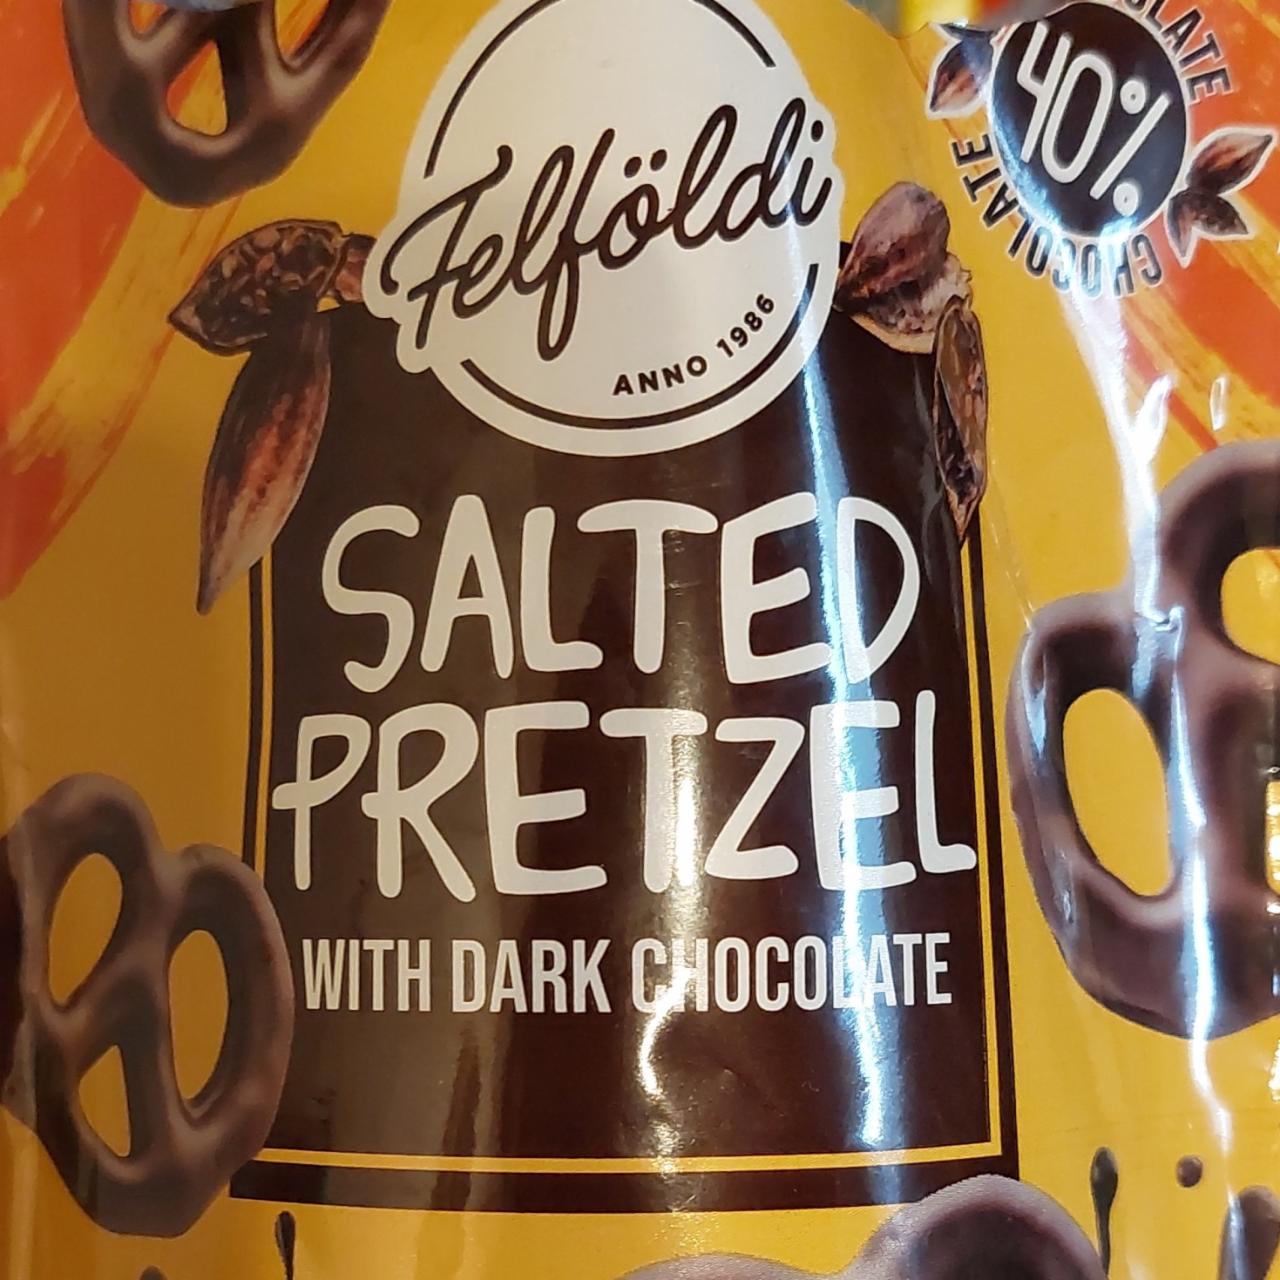 Fotografie - Salted Pretzel with dark chocolate Felföldi